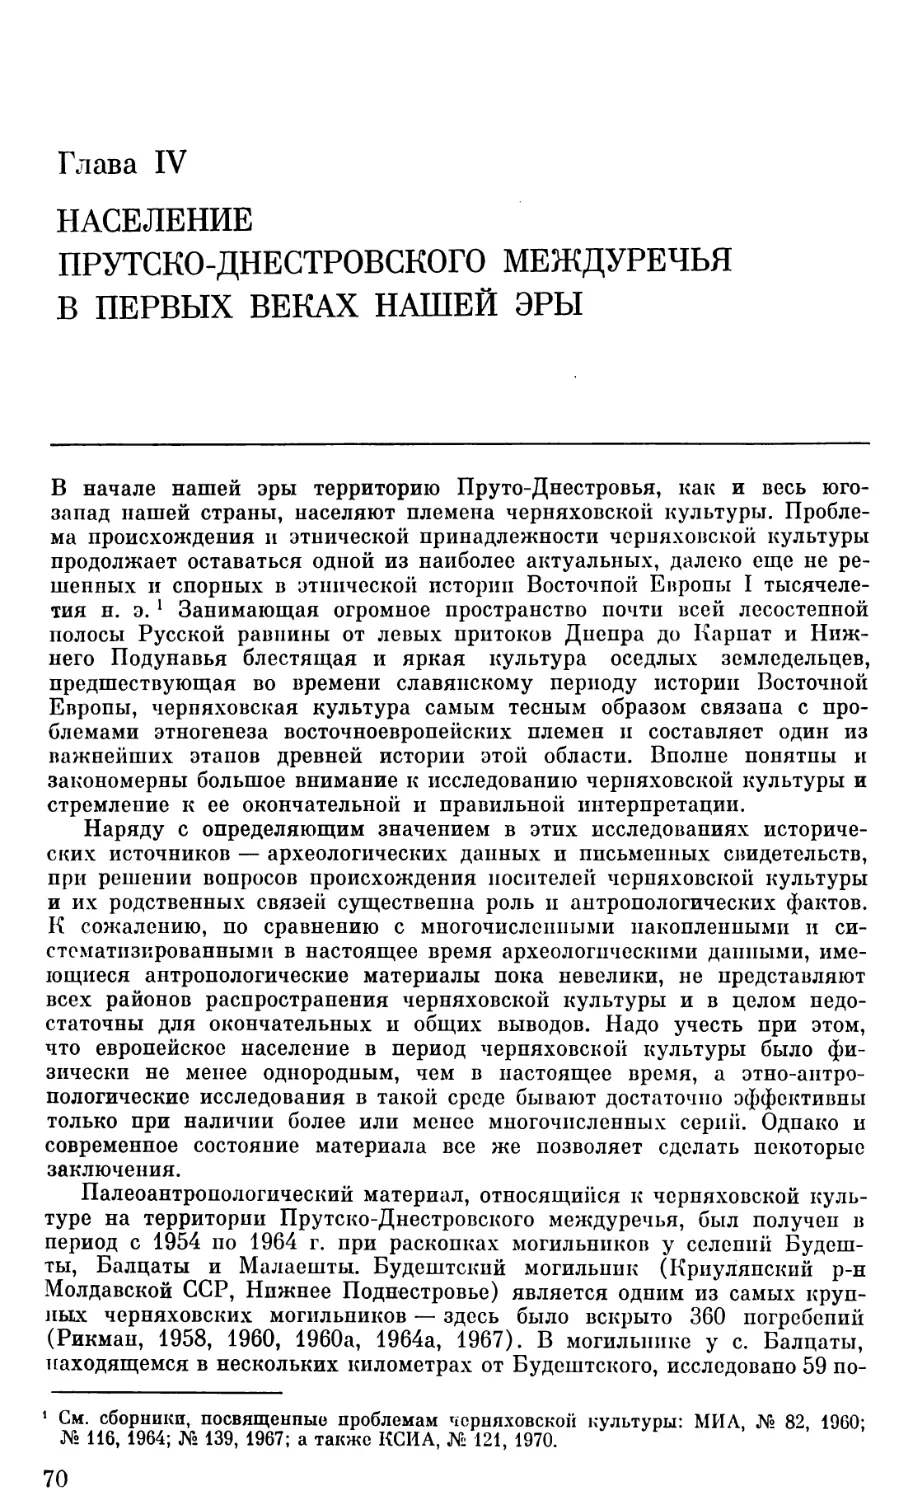 Глава IV. Население Прутско-Днестровского междуречья в первых веках нашей эры